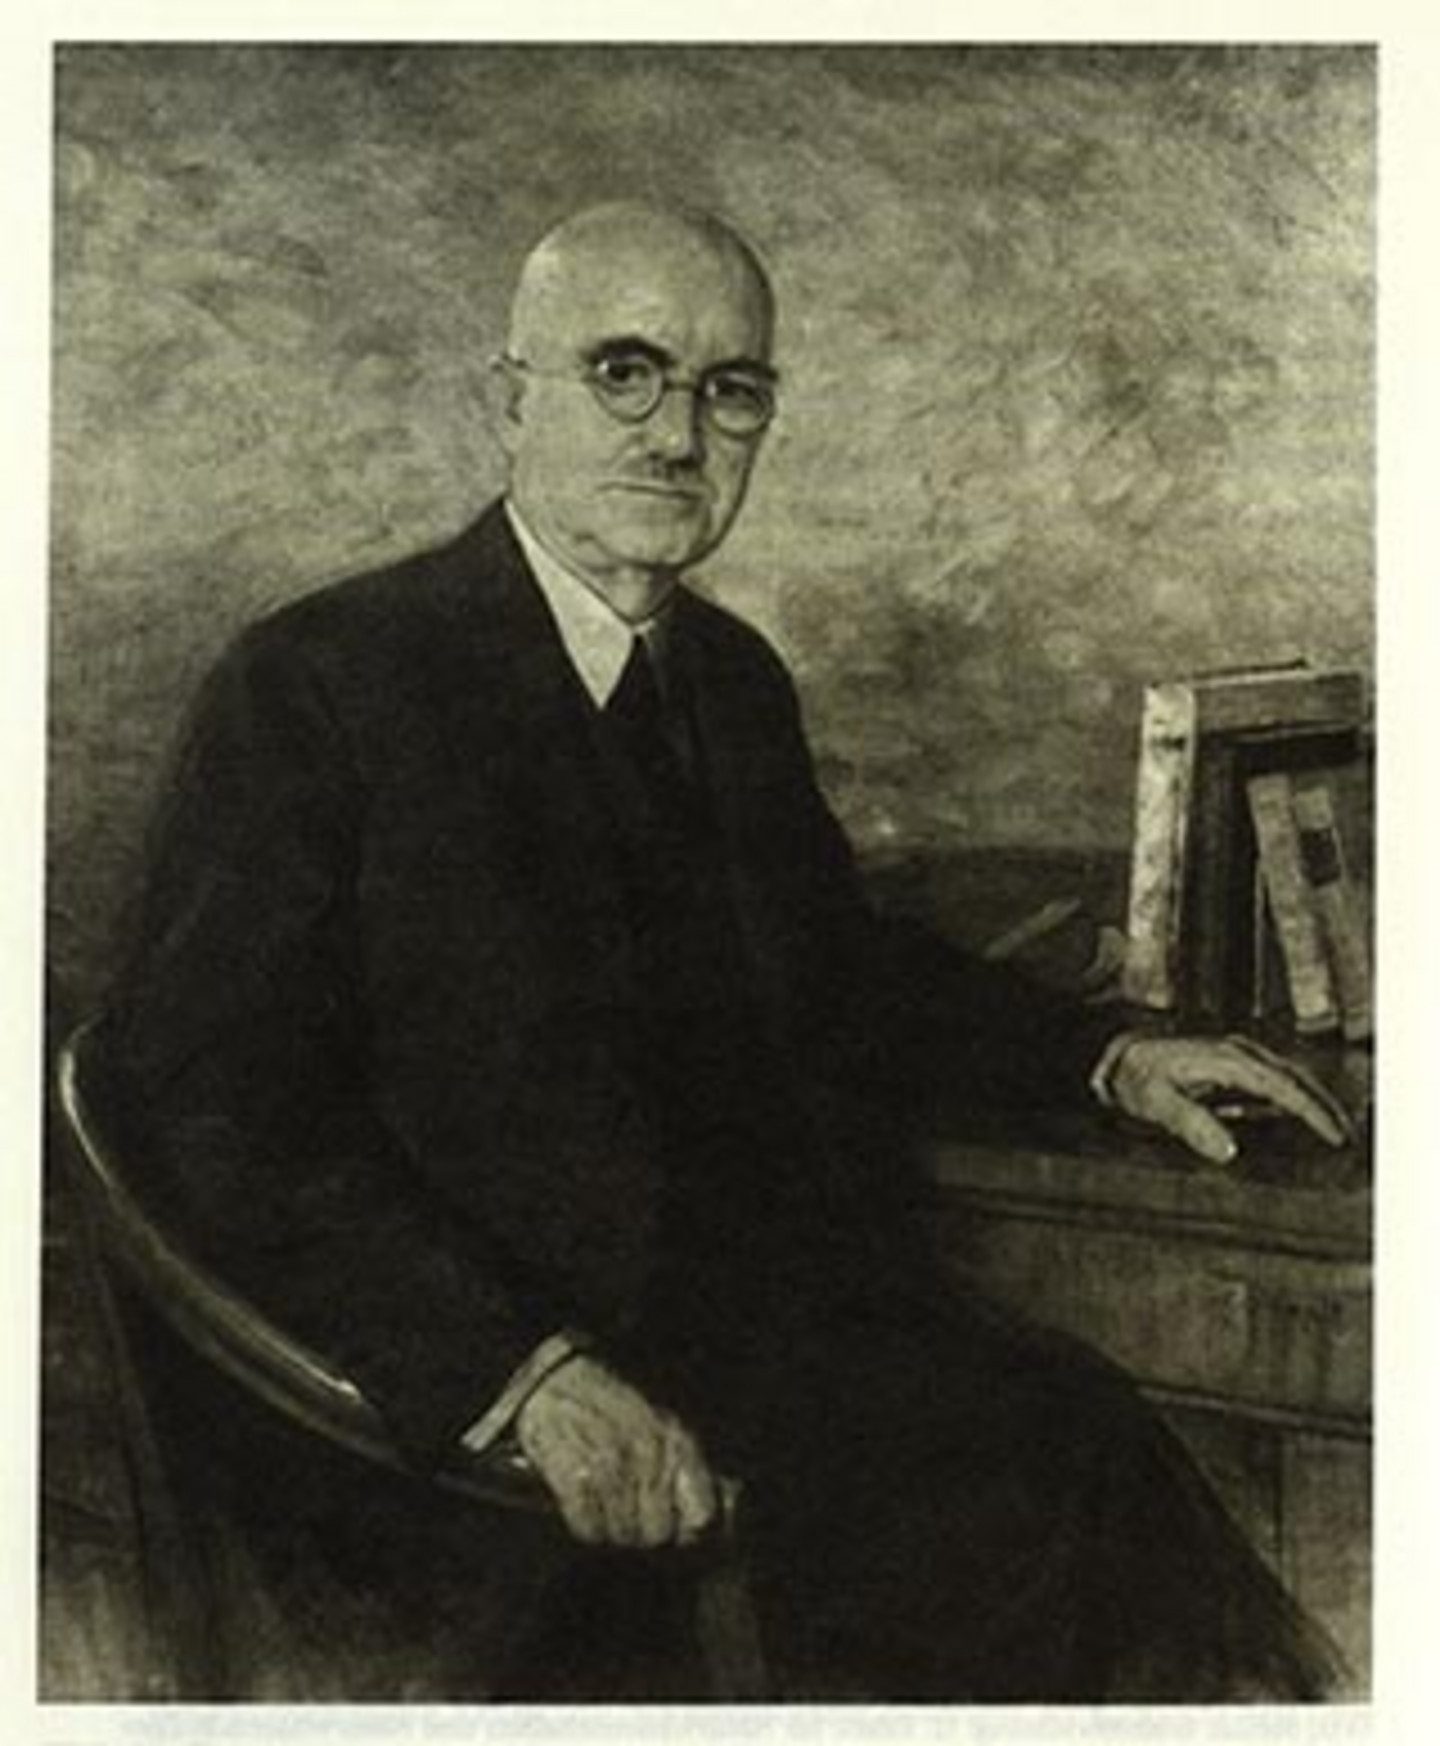 Ein Porträt von Wilhelm Reiners, der Firmenchef der Maschinenfabrik "W. Schlafhorst & Co." und der "Chemischen Fabrik Rhenus Wilhelm Reiners".